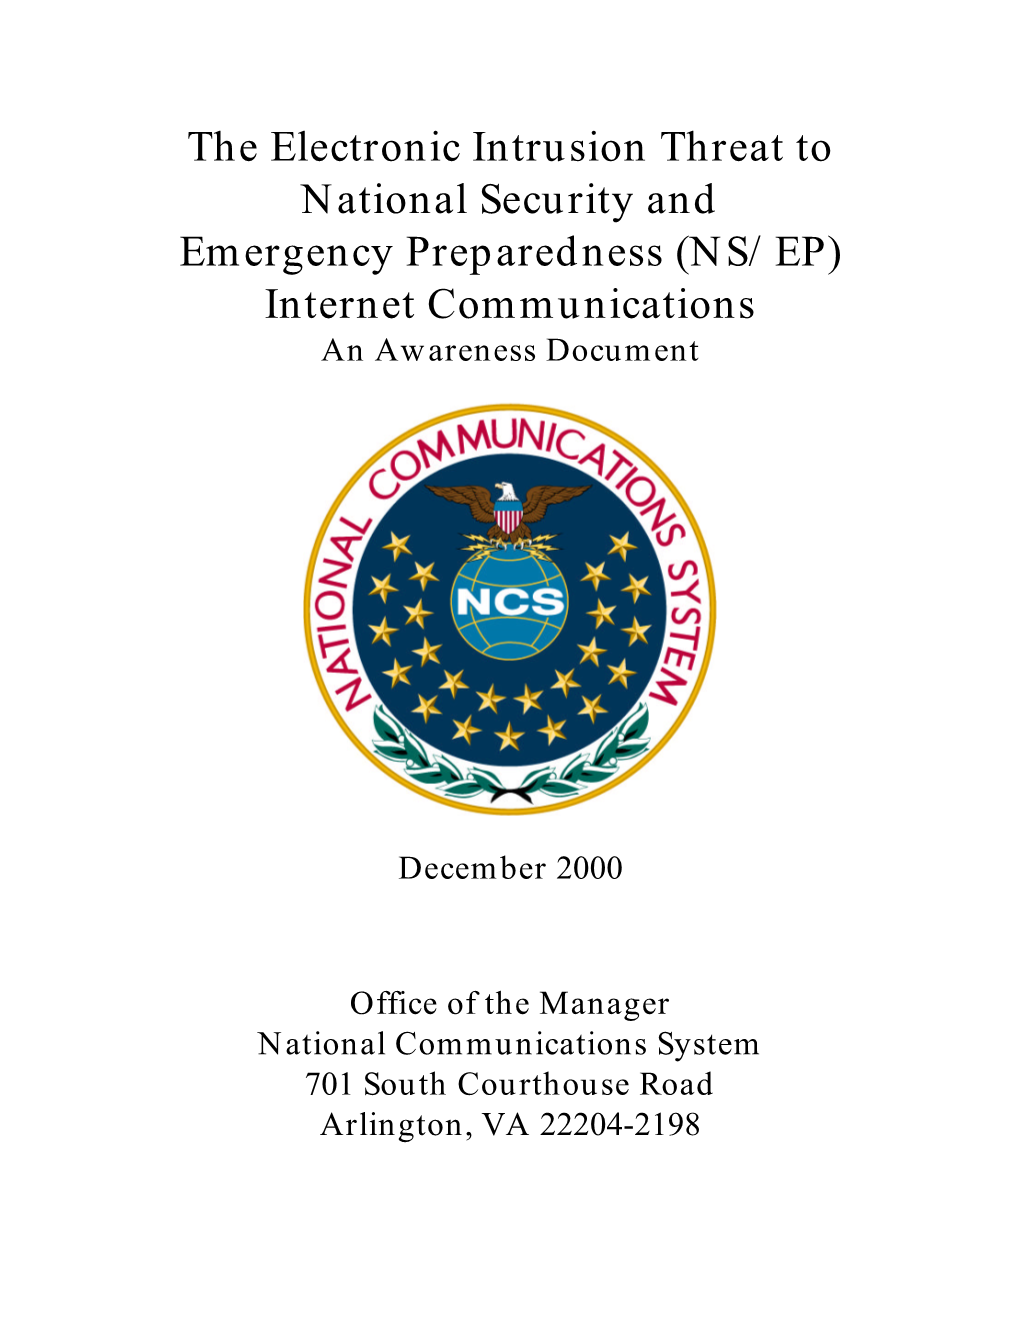 NS/EP) Internet Communications an Awareness Document